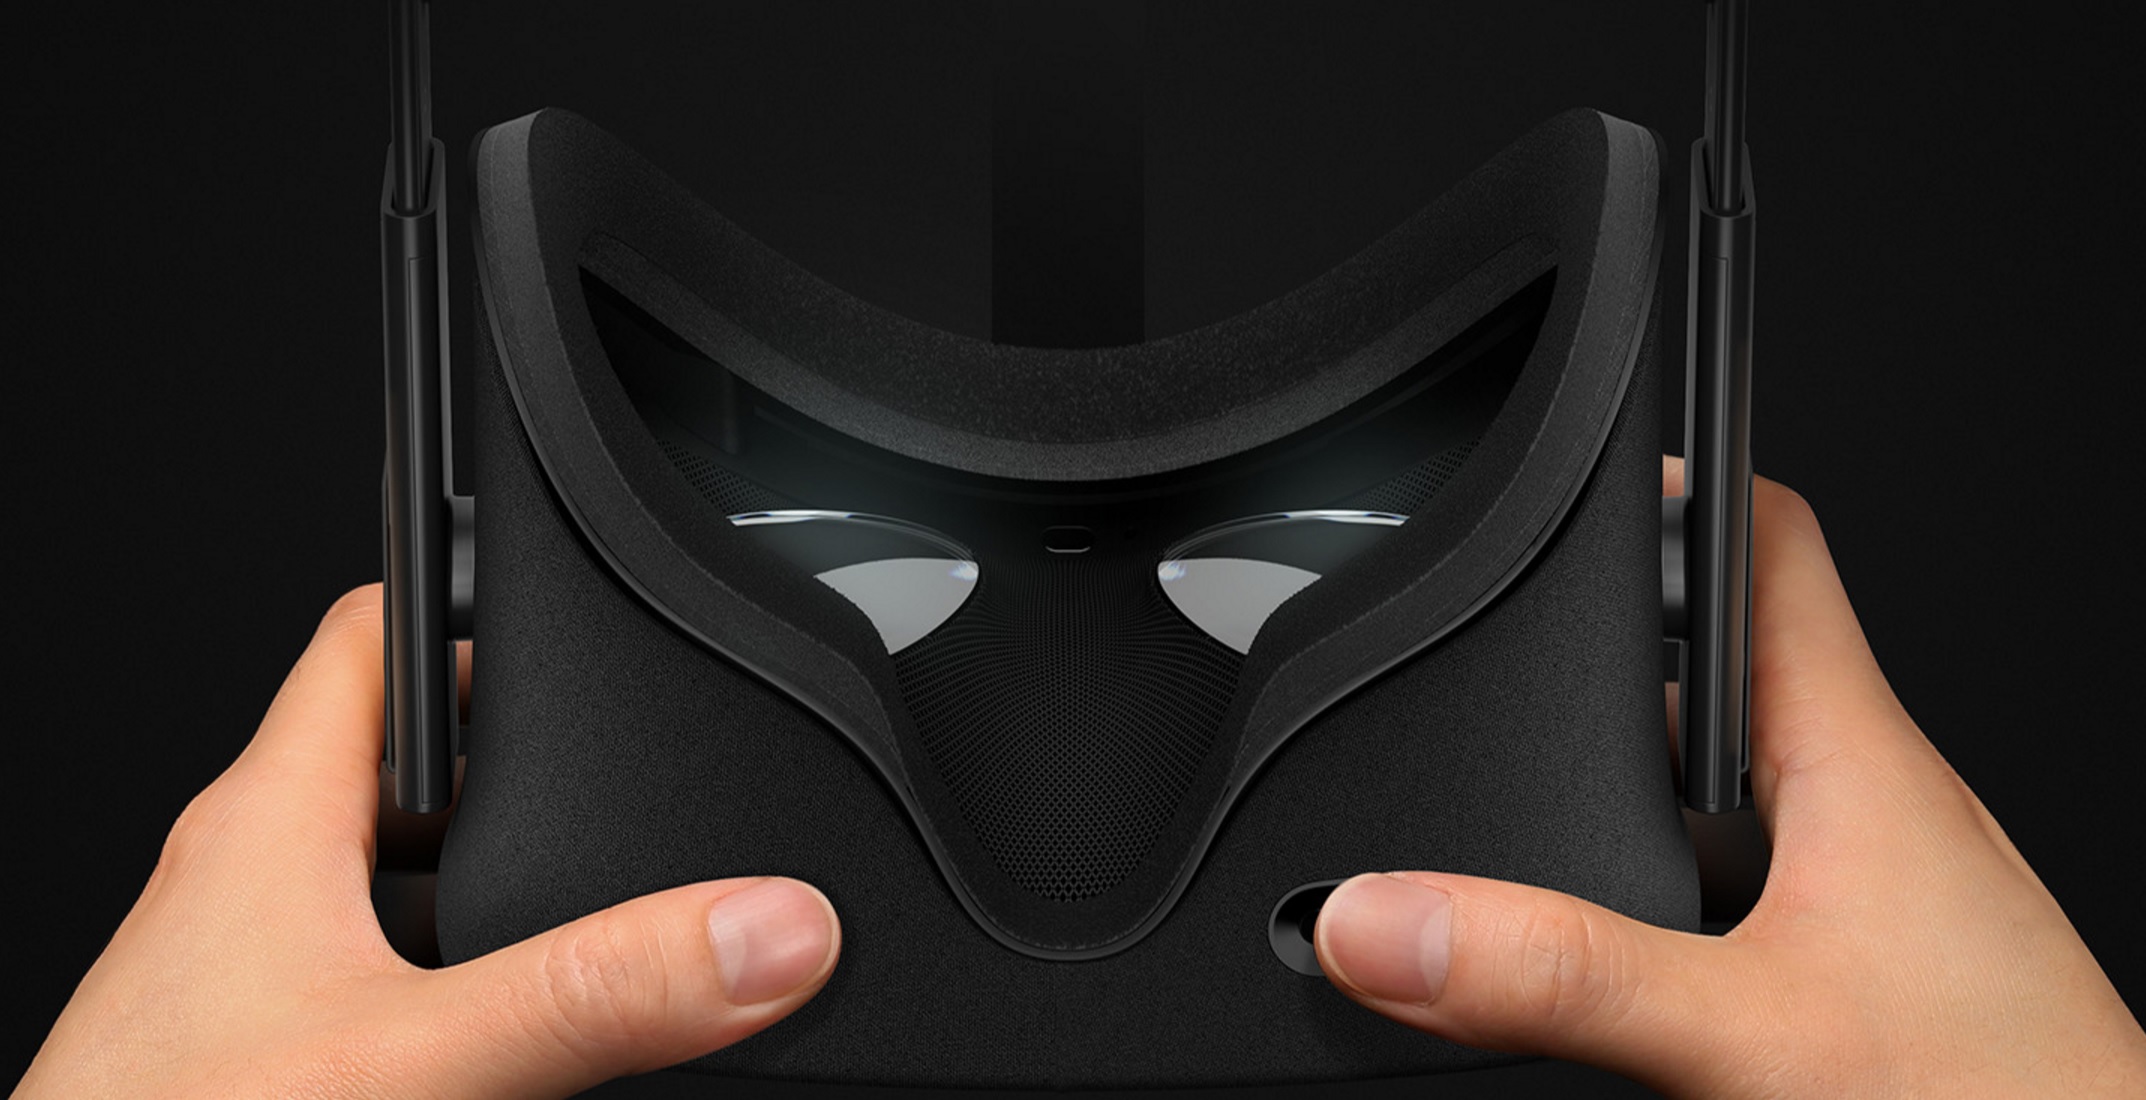 Oculus Rift og HTC Vive har oppløsningen 1080 x 1200 per øye.